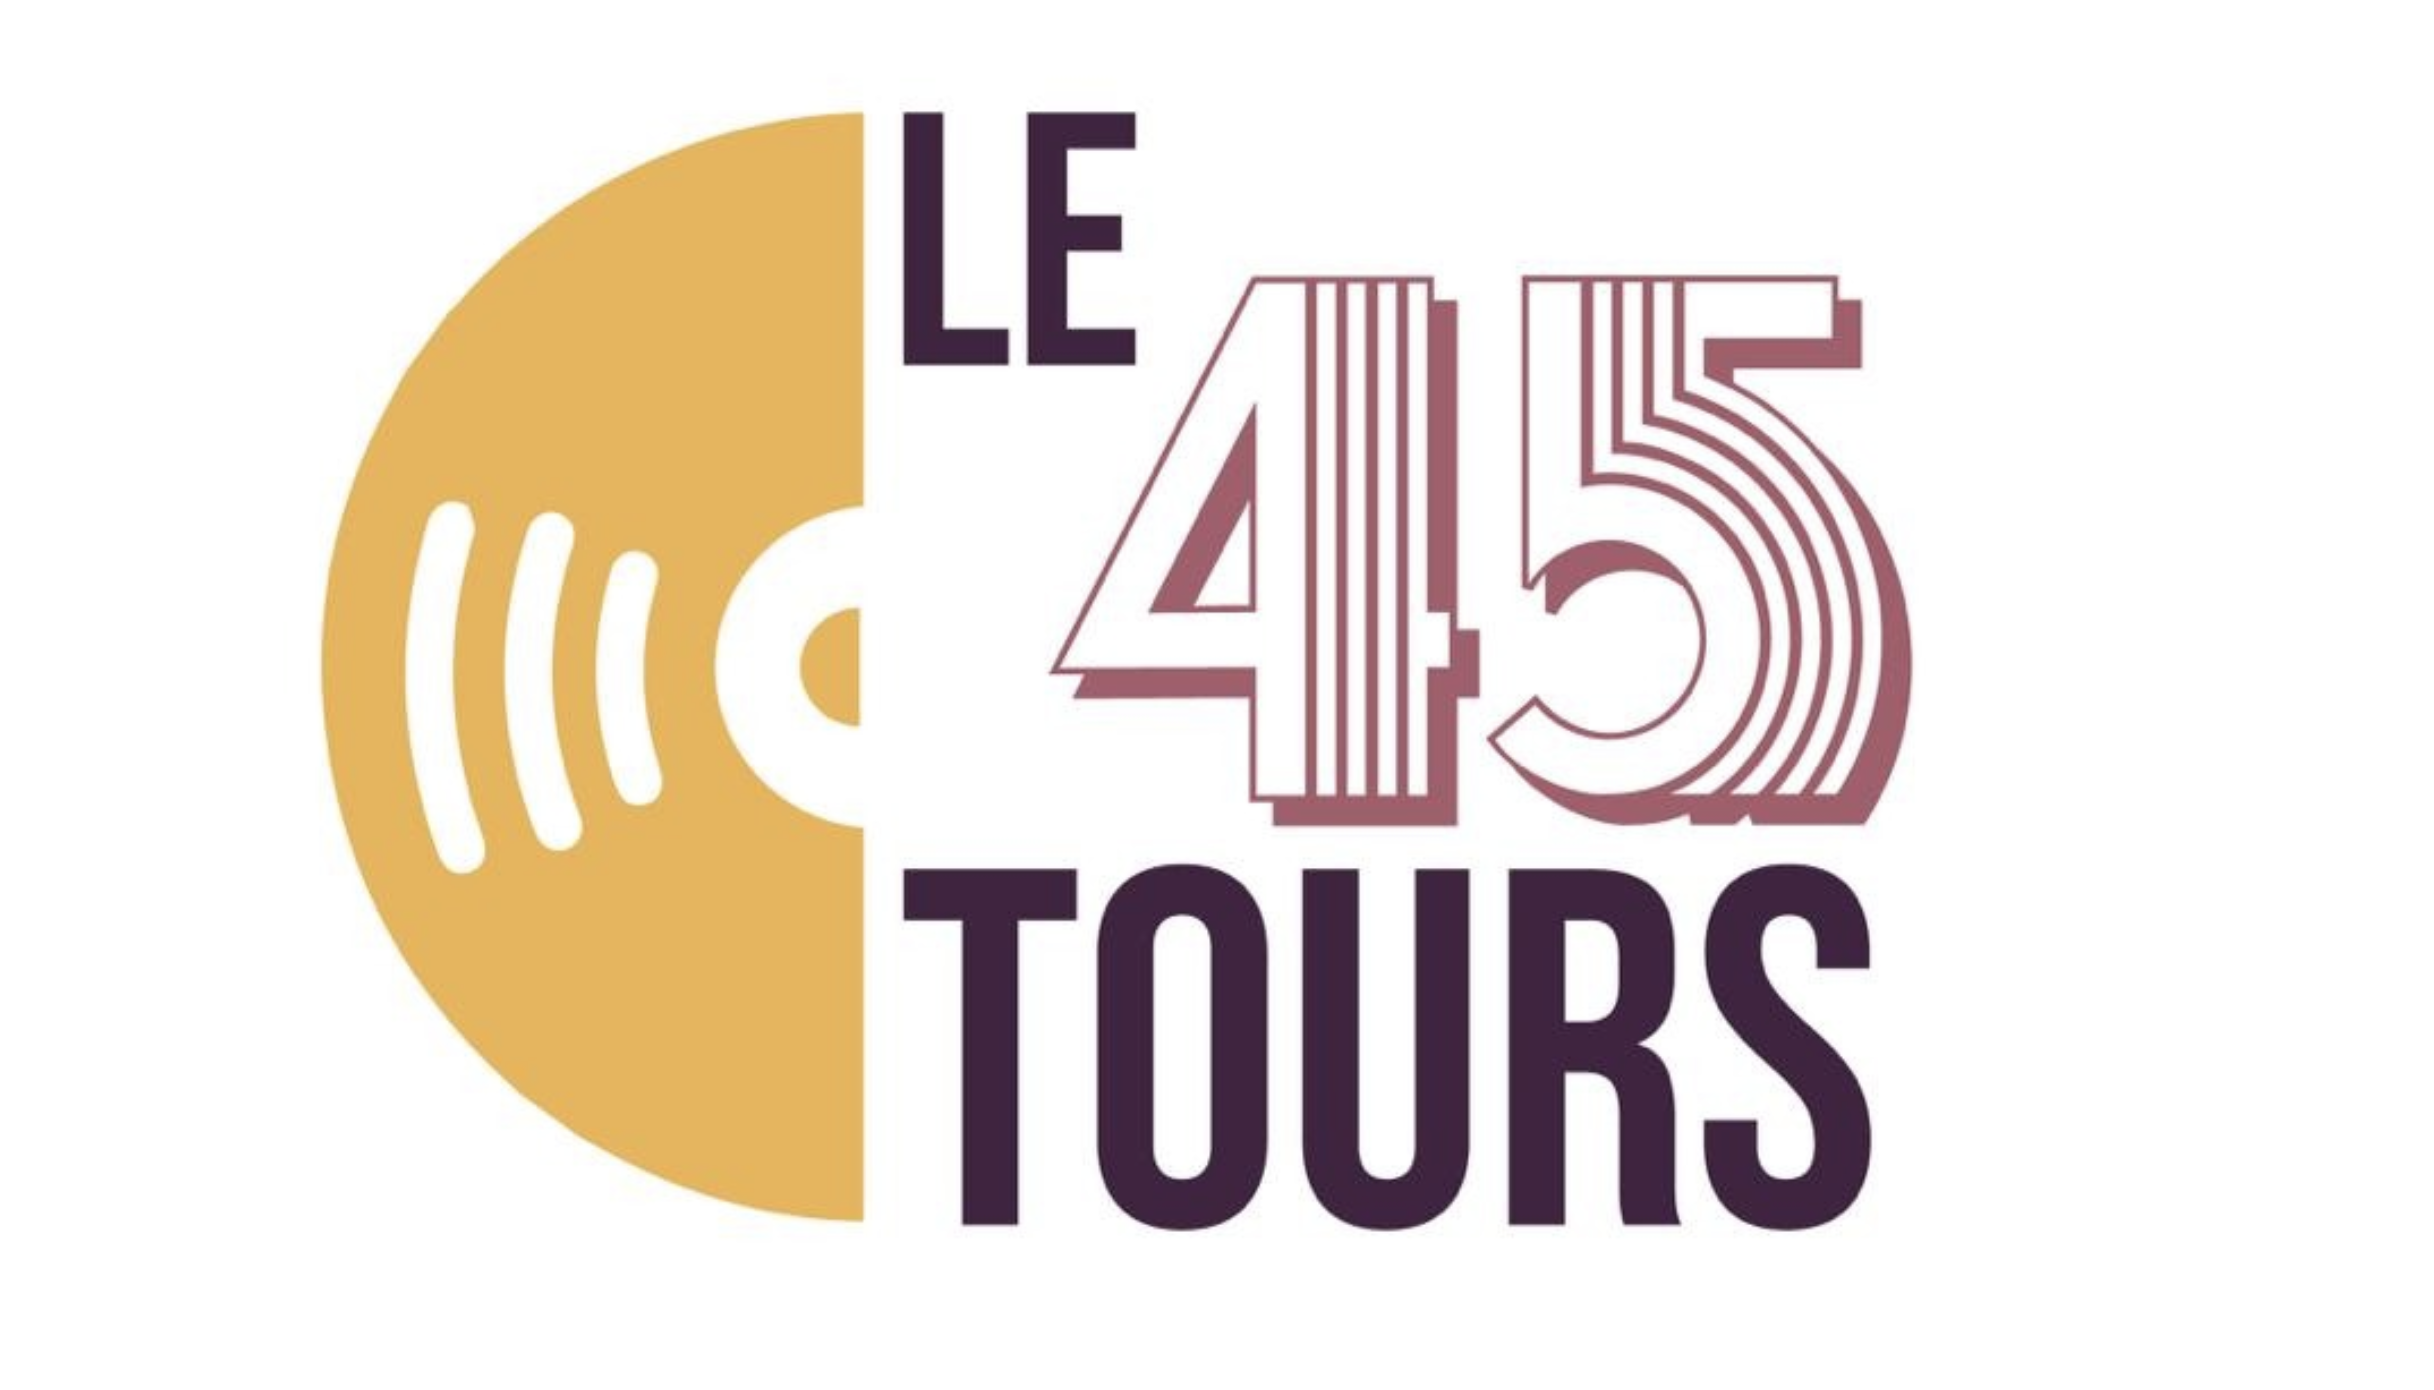 Le 45 Tours - Bar Karaoké Box Réduction LE PASS